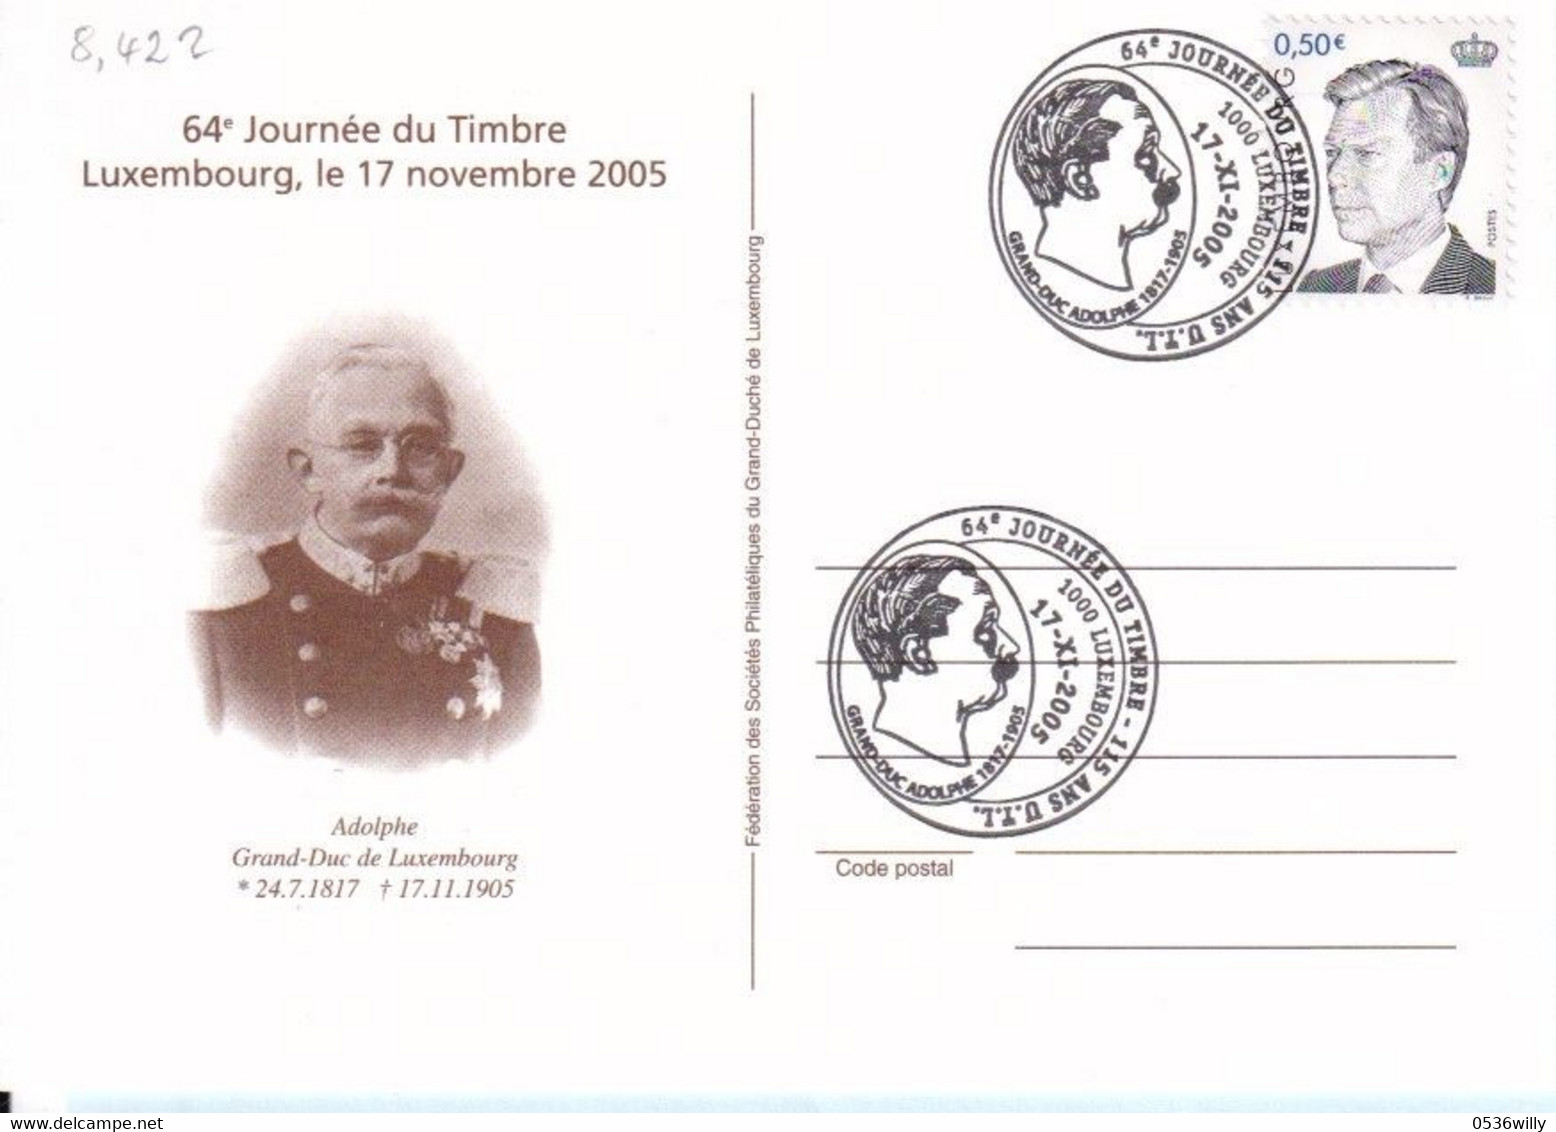 Luxembourg - Journêe Du Timbre (8.422) - Briefe U. Dokumente